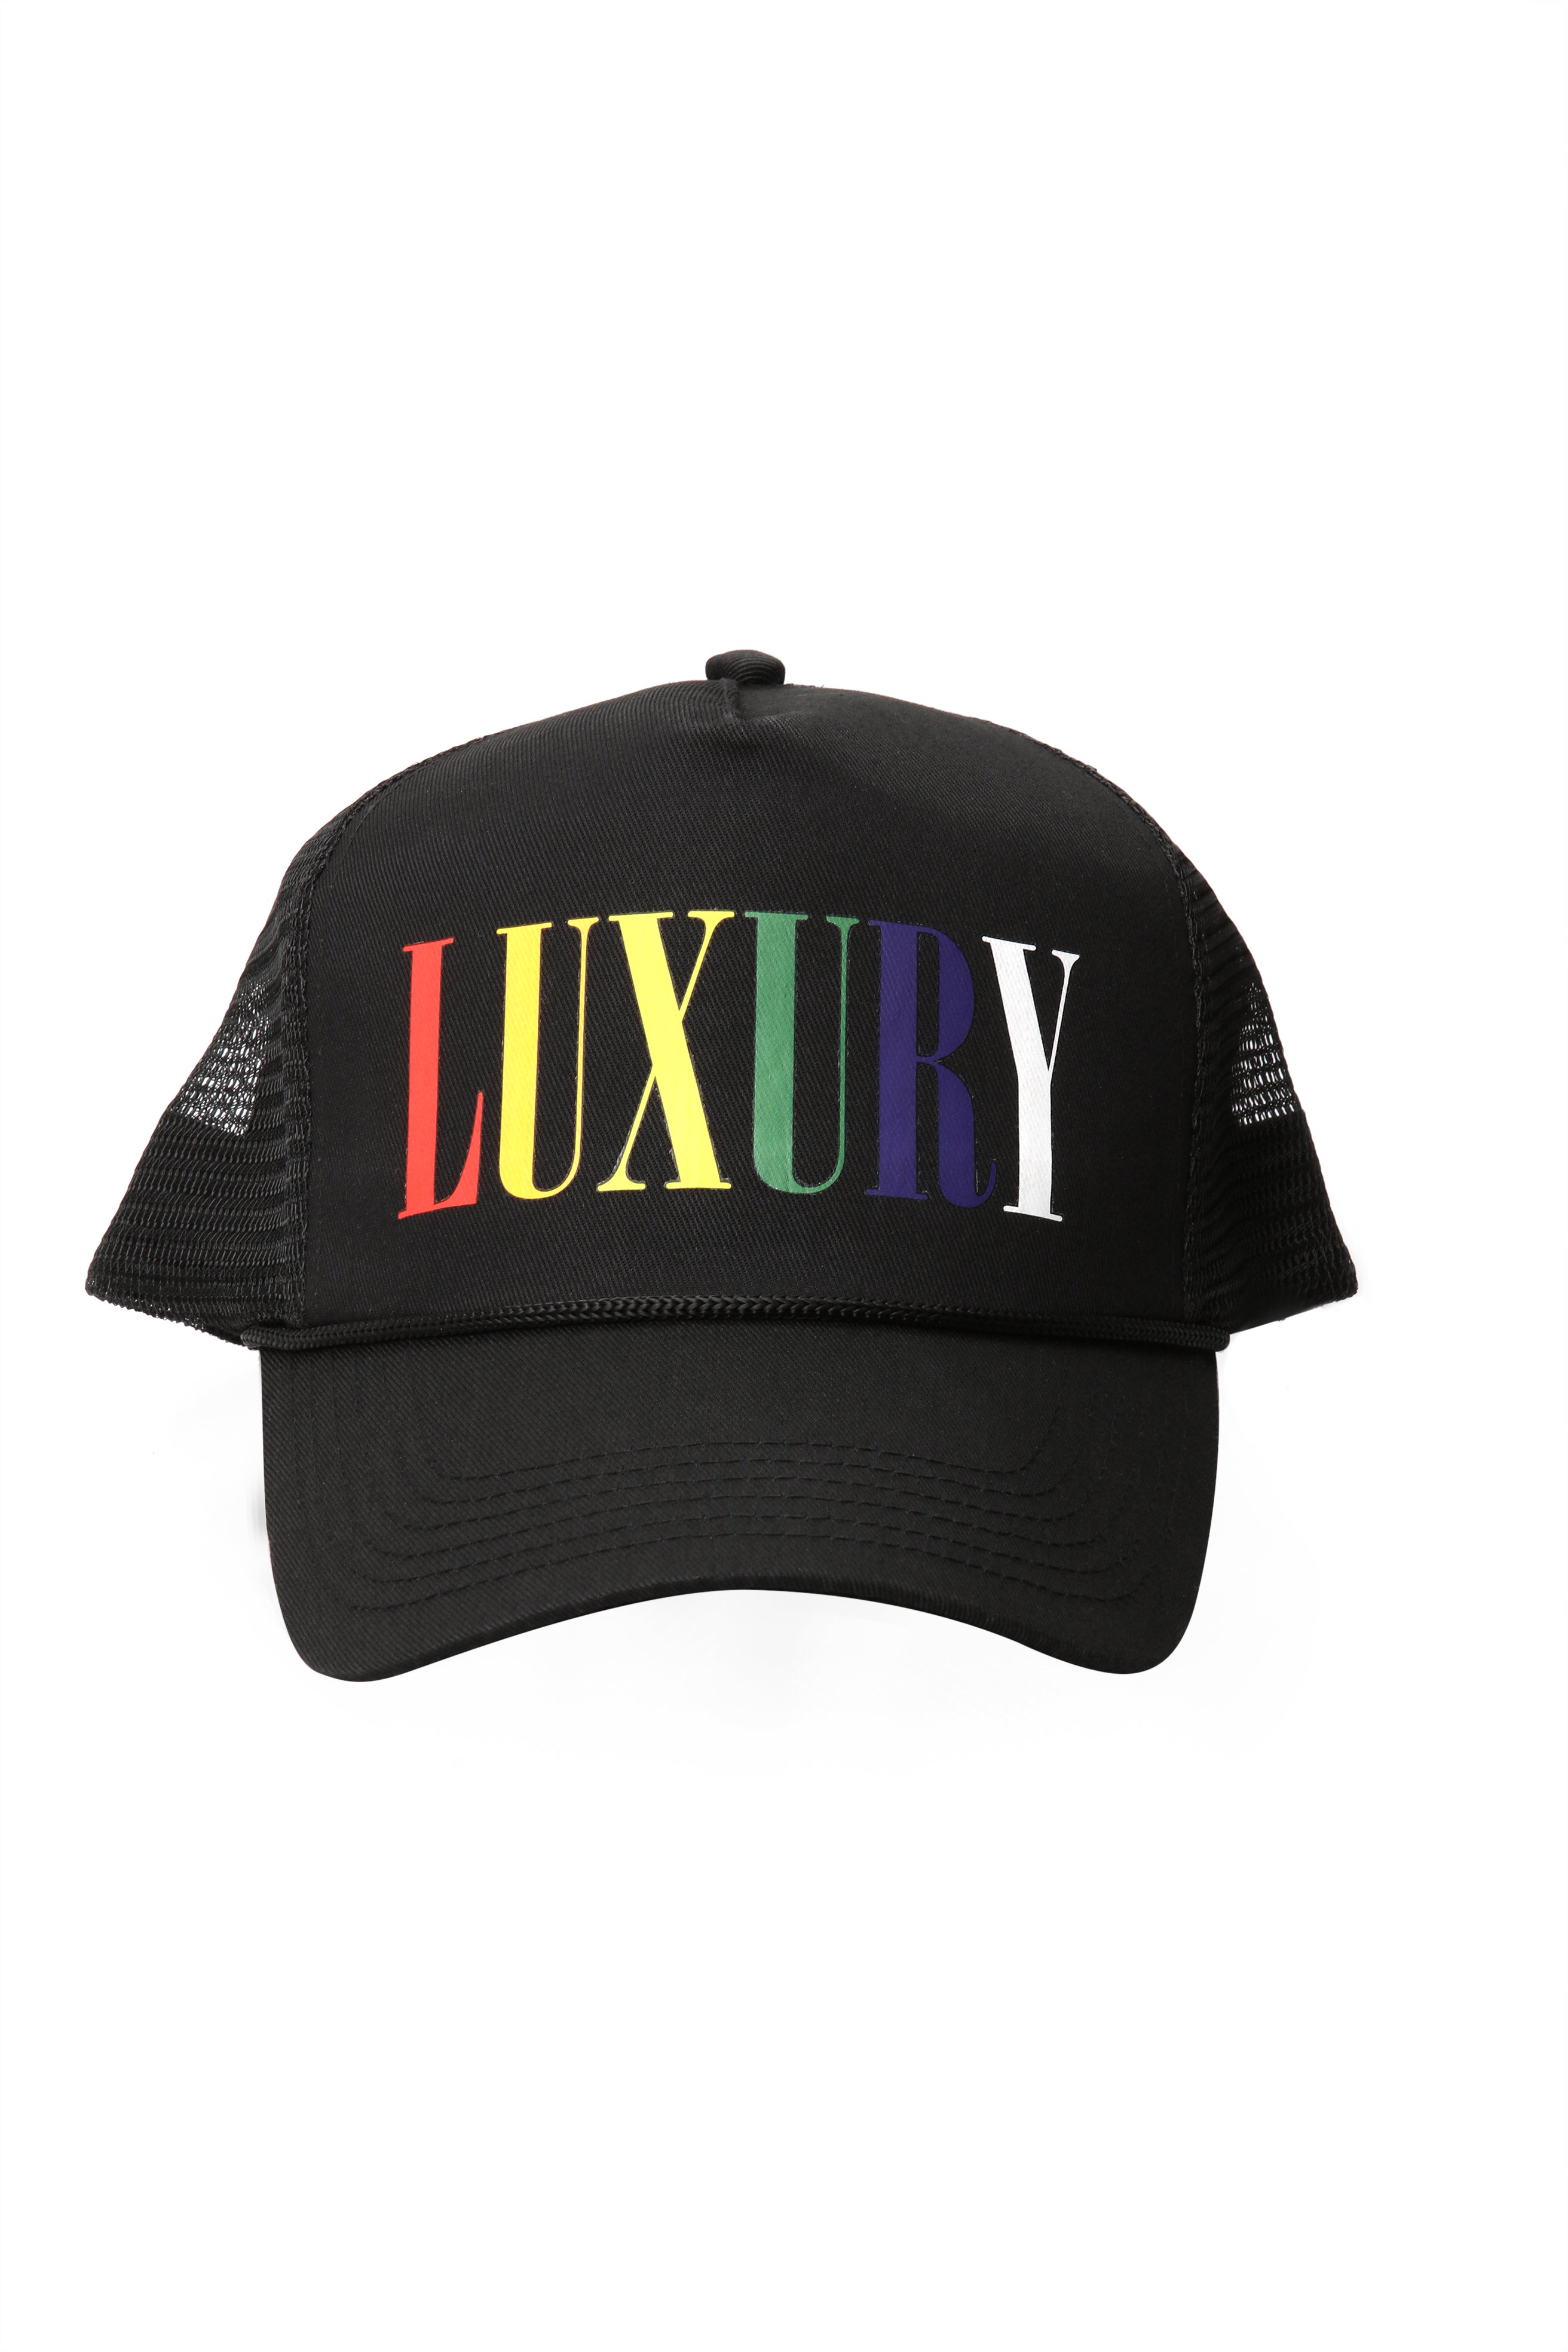 Louis Vuitton, Accessories, Womens Louis Vuitton Curve Trucker Snapback  Hat